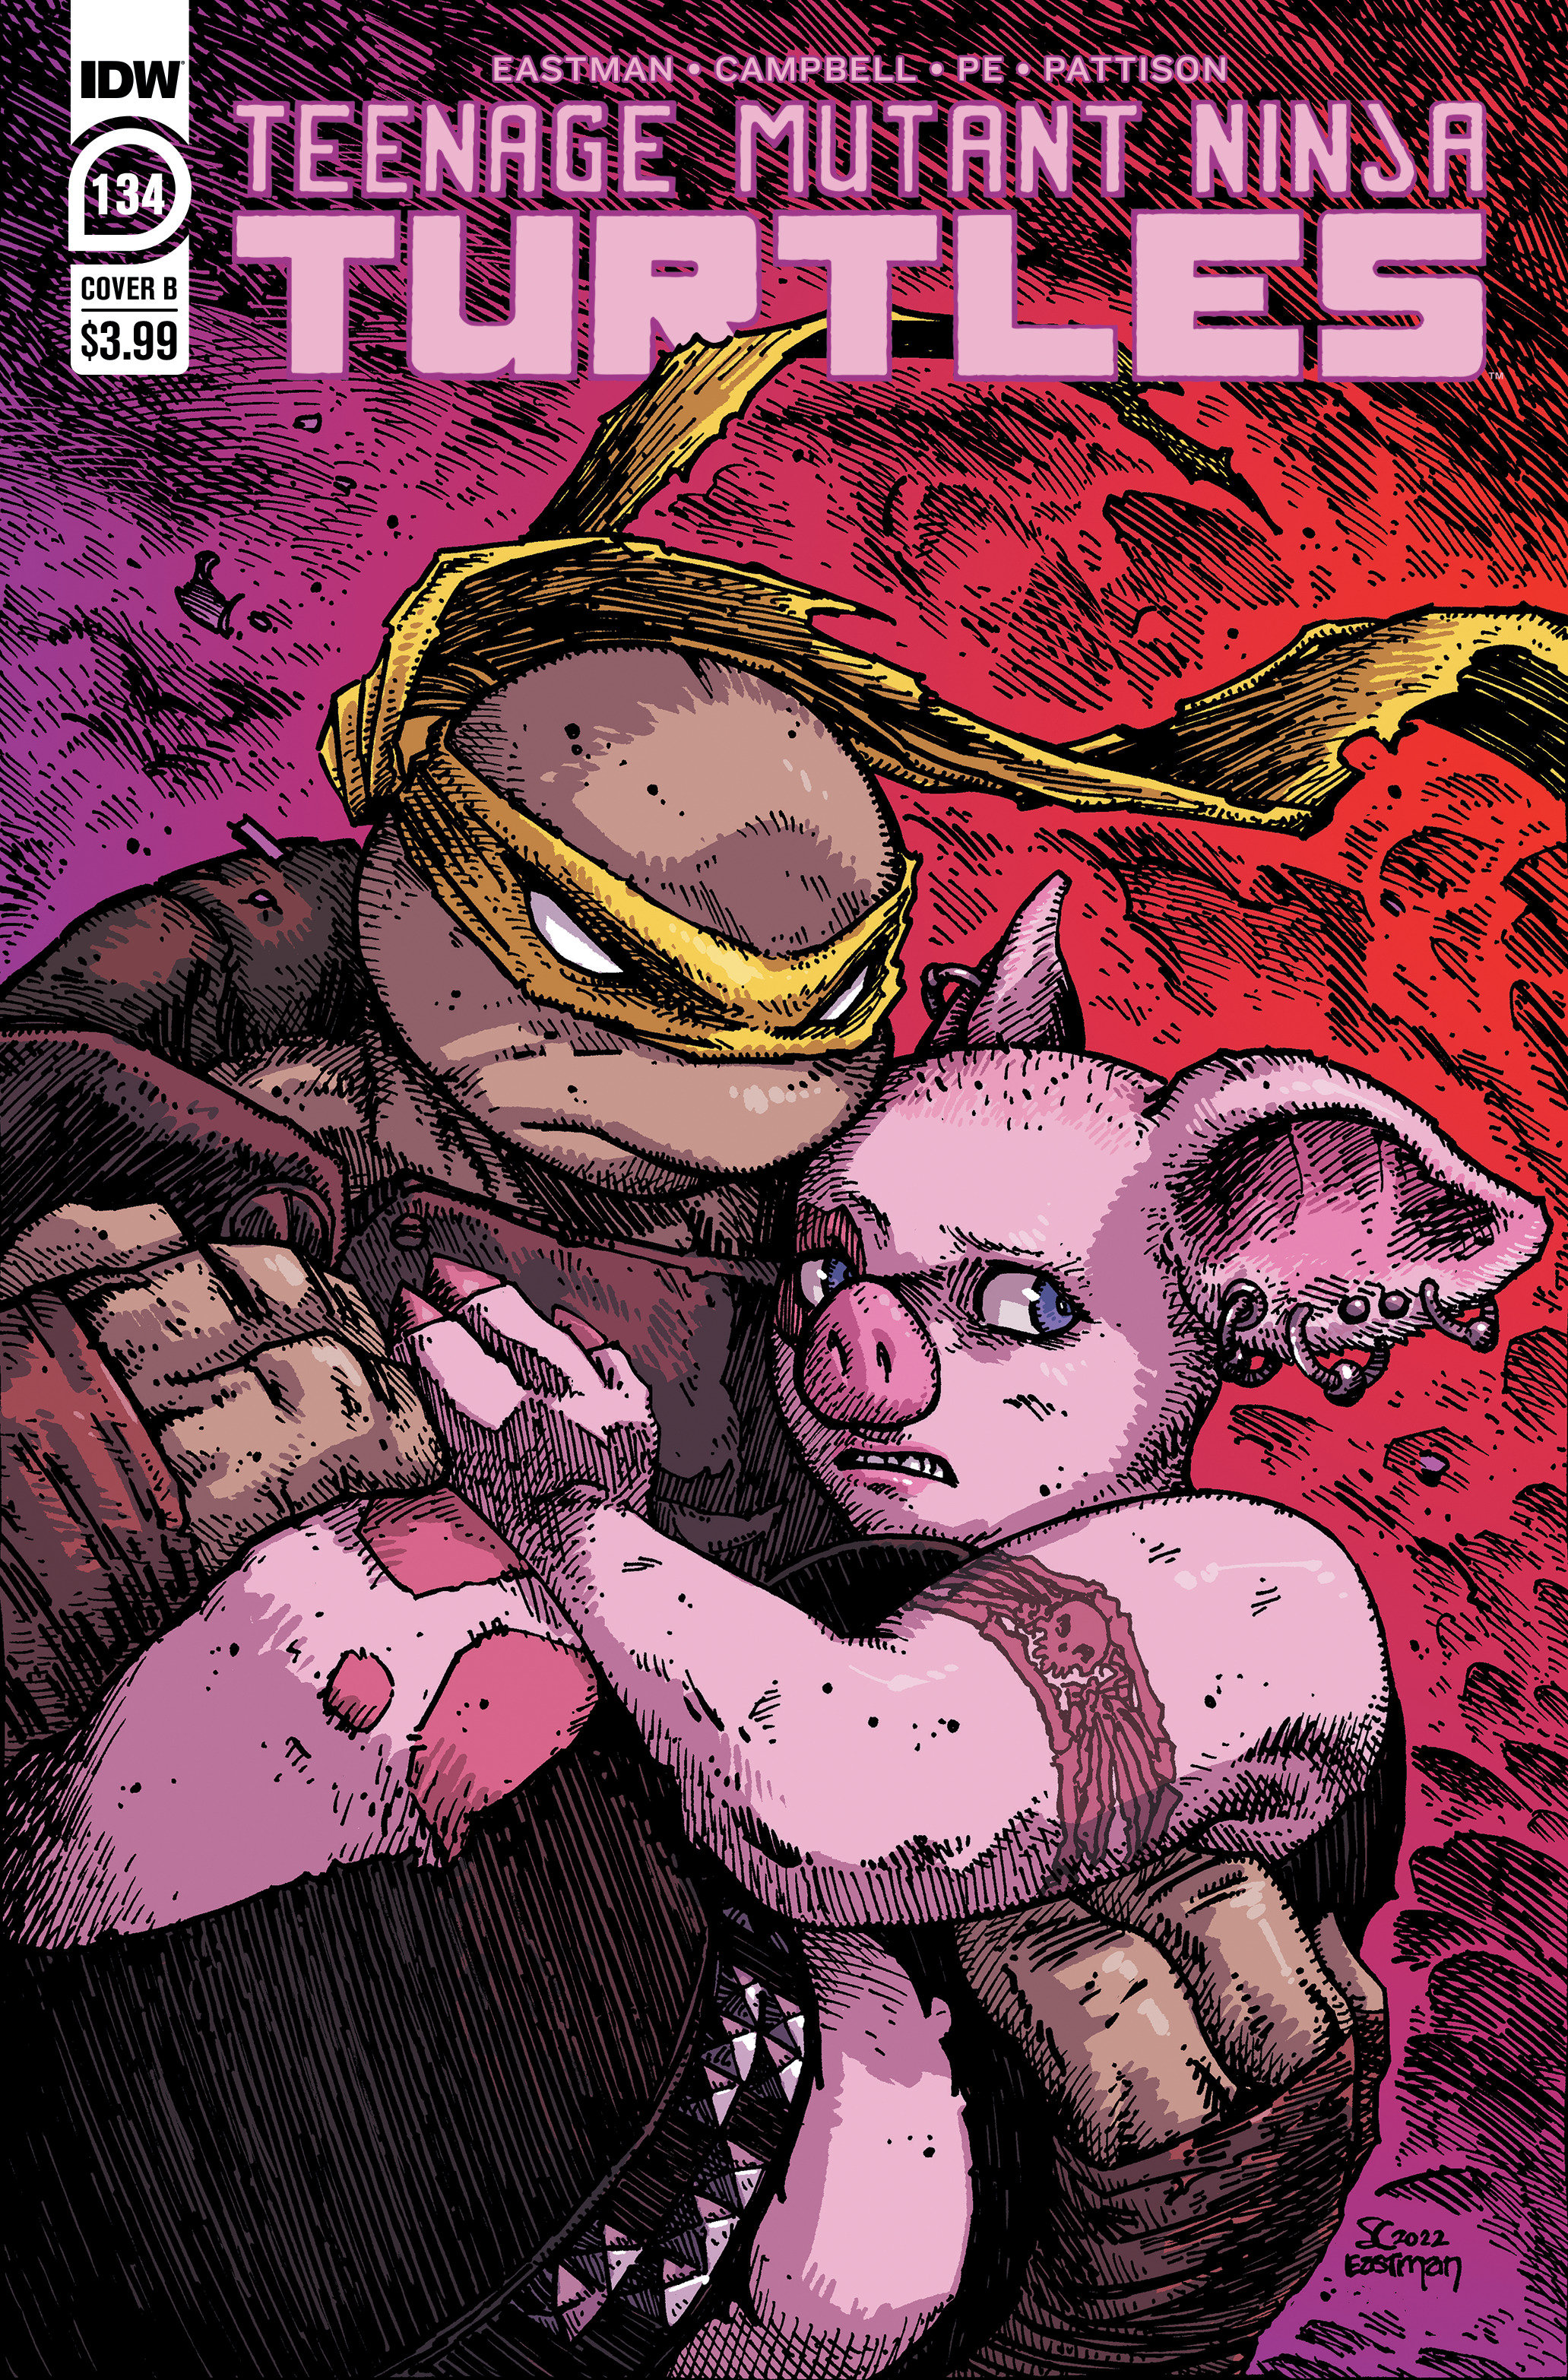 Teenage Mutant Ninja Turtles Ongoing #134 Cover B Eastman (2011)